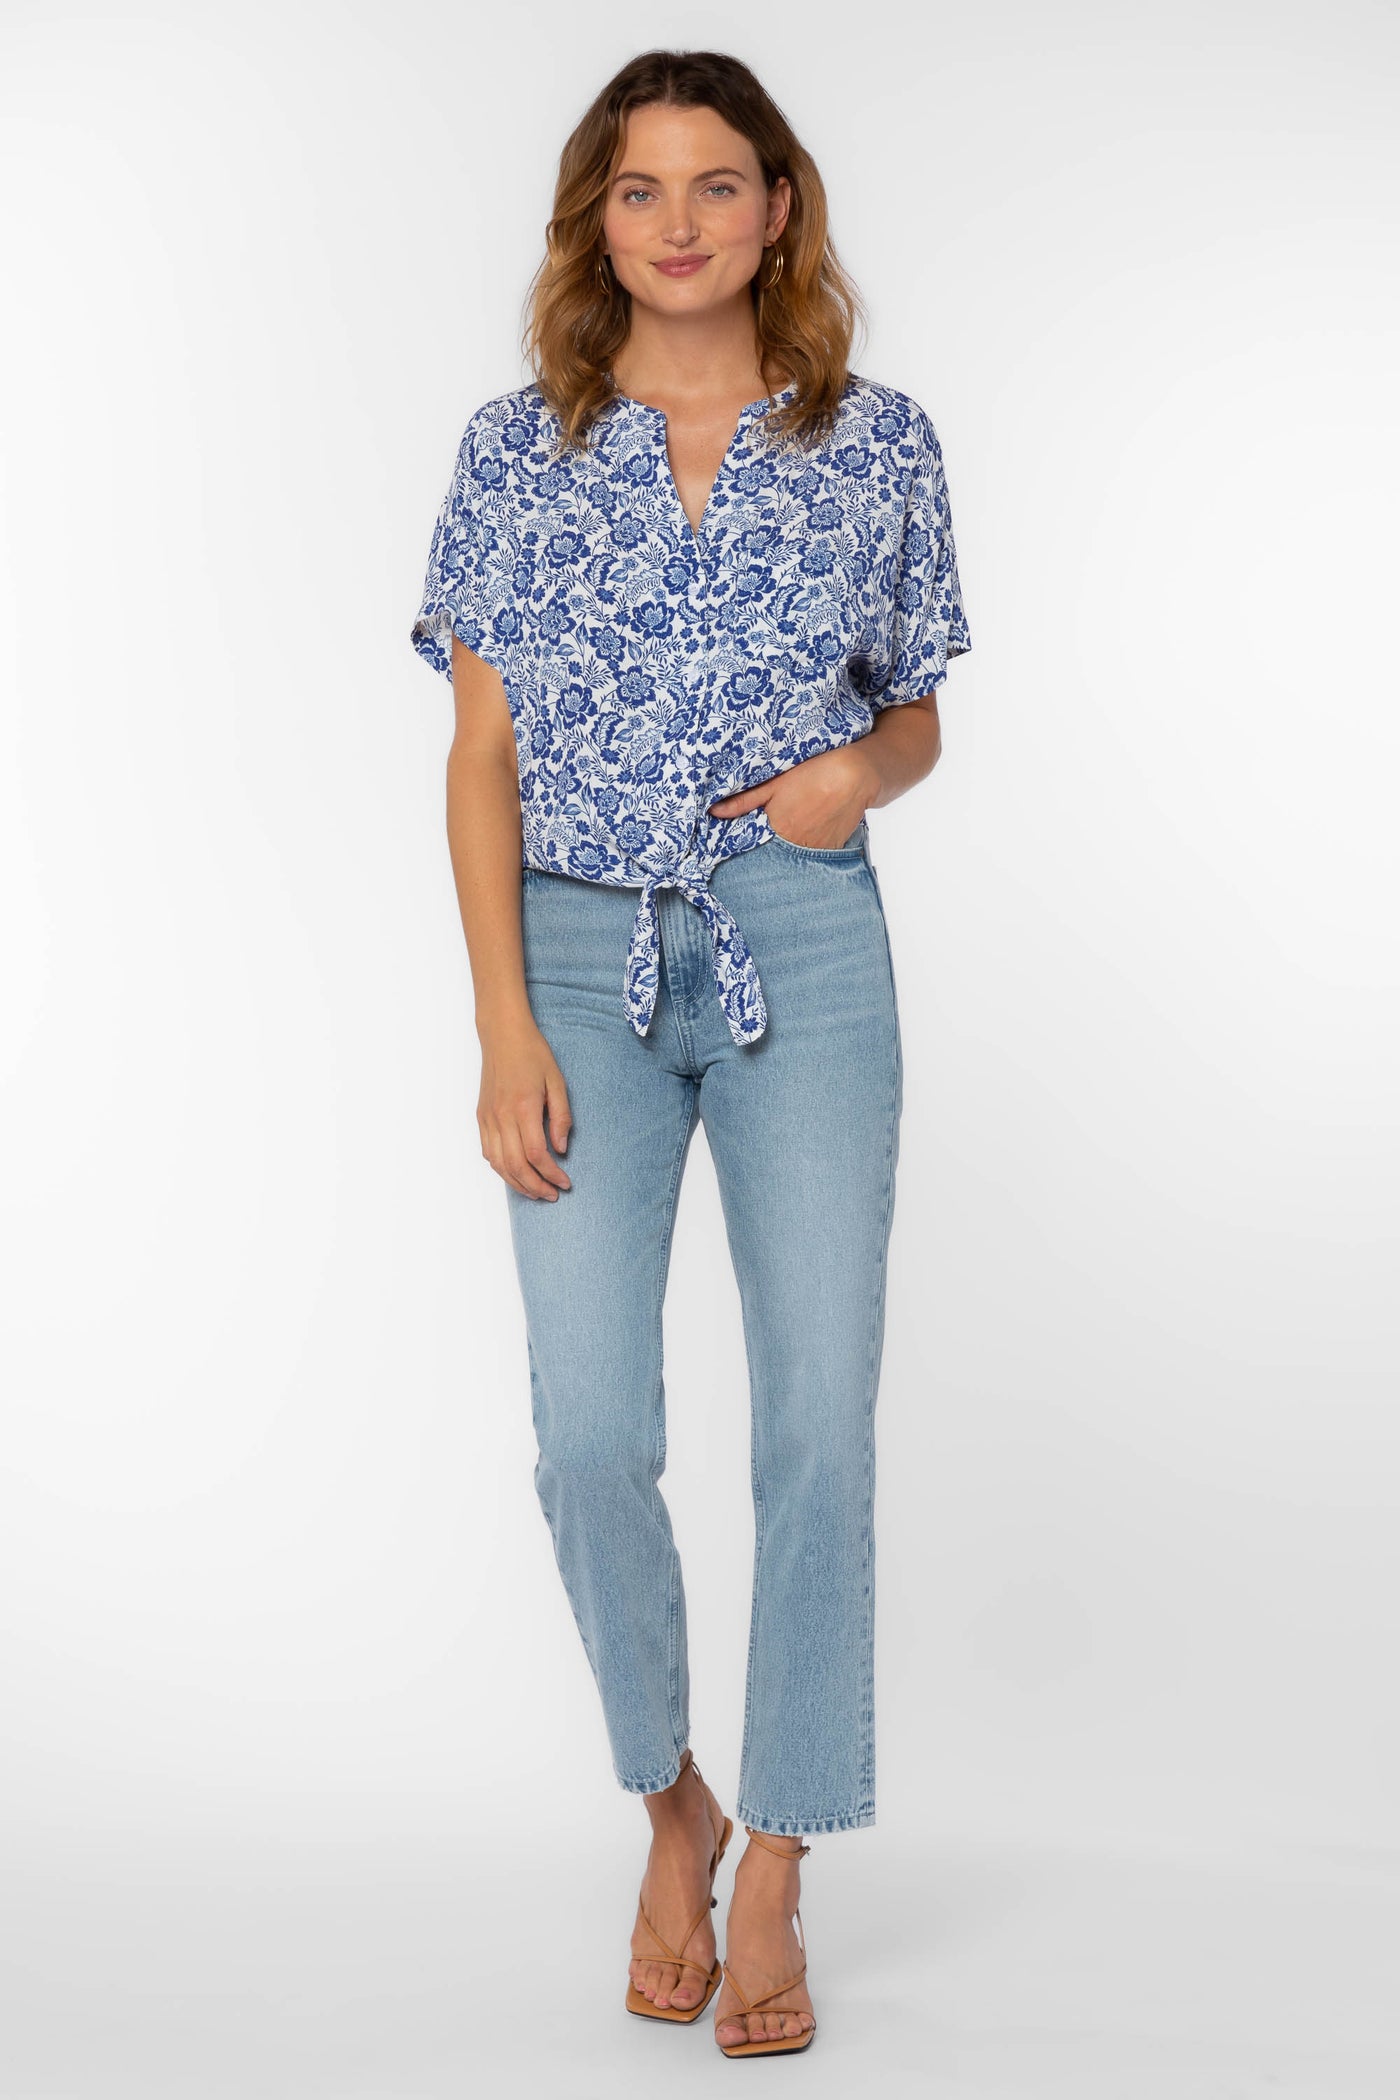 Shelby Blue Floral Shirt - Tops - Velvet Heart Clothing